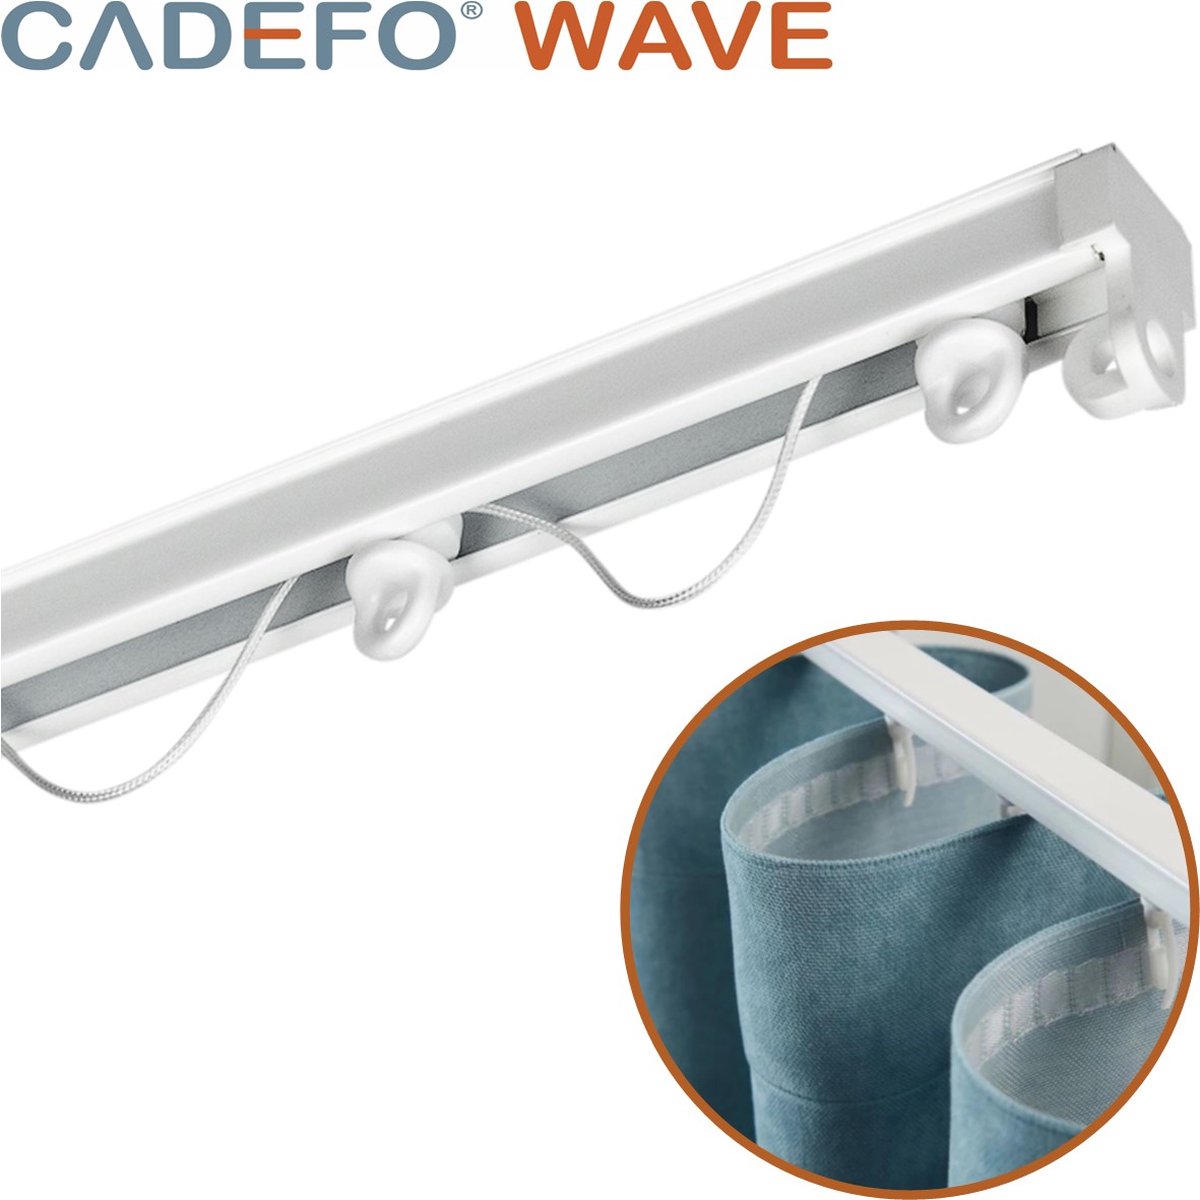 CADEFO WAVE (151 - 200 cm) Gordijnrails - Compleet op maat! - UIT 1 STUK - Leverbaar tot 6 meter - Plafondbevestiging - Lengte 187 cm